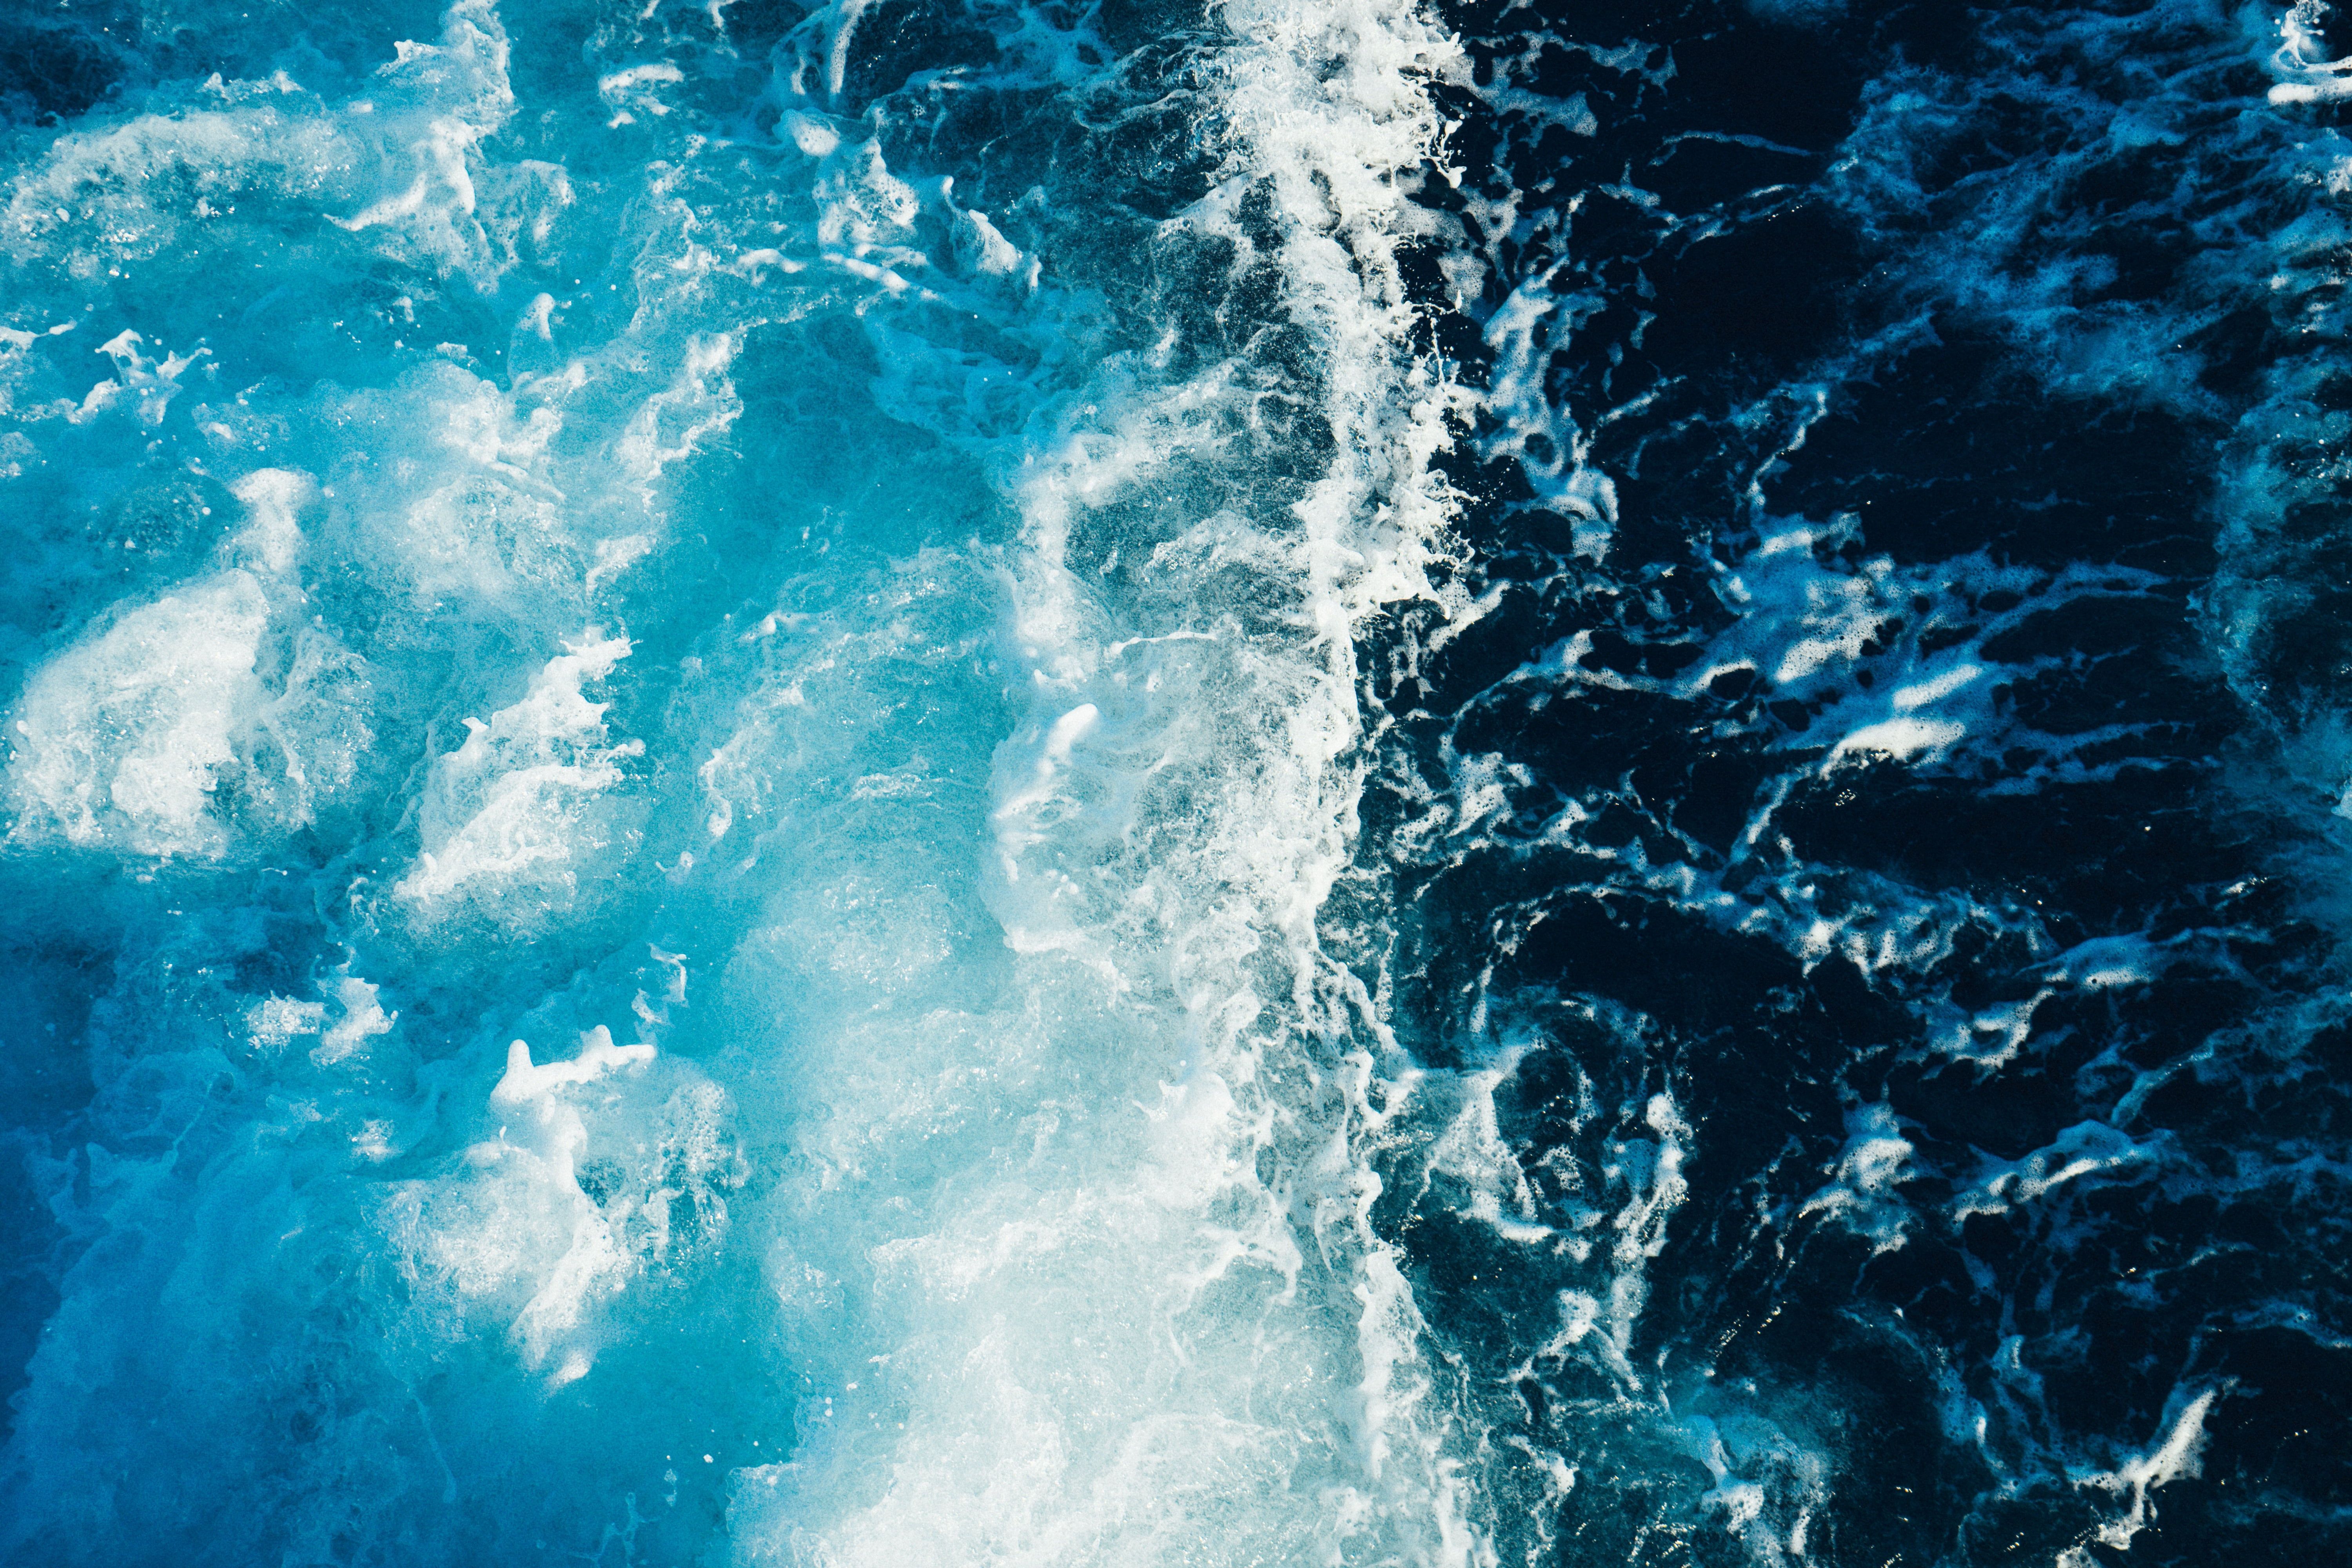 sea waves wallpaper #sea #foam #surf K #wallpaper #hdwallpaper #desktop. Waves wallpaper, Surfing wallpaper, Ocean wallpaper